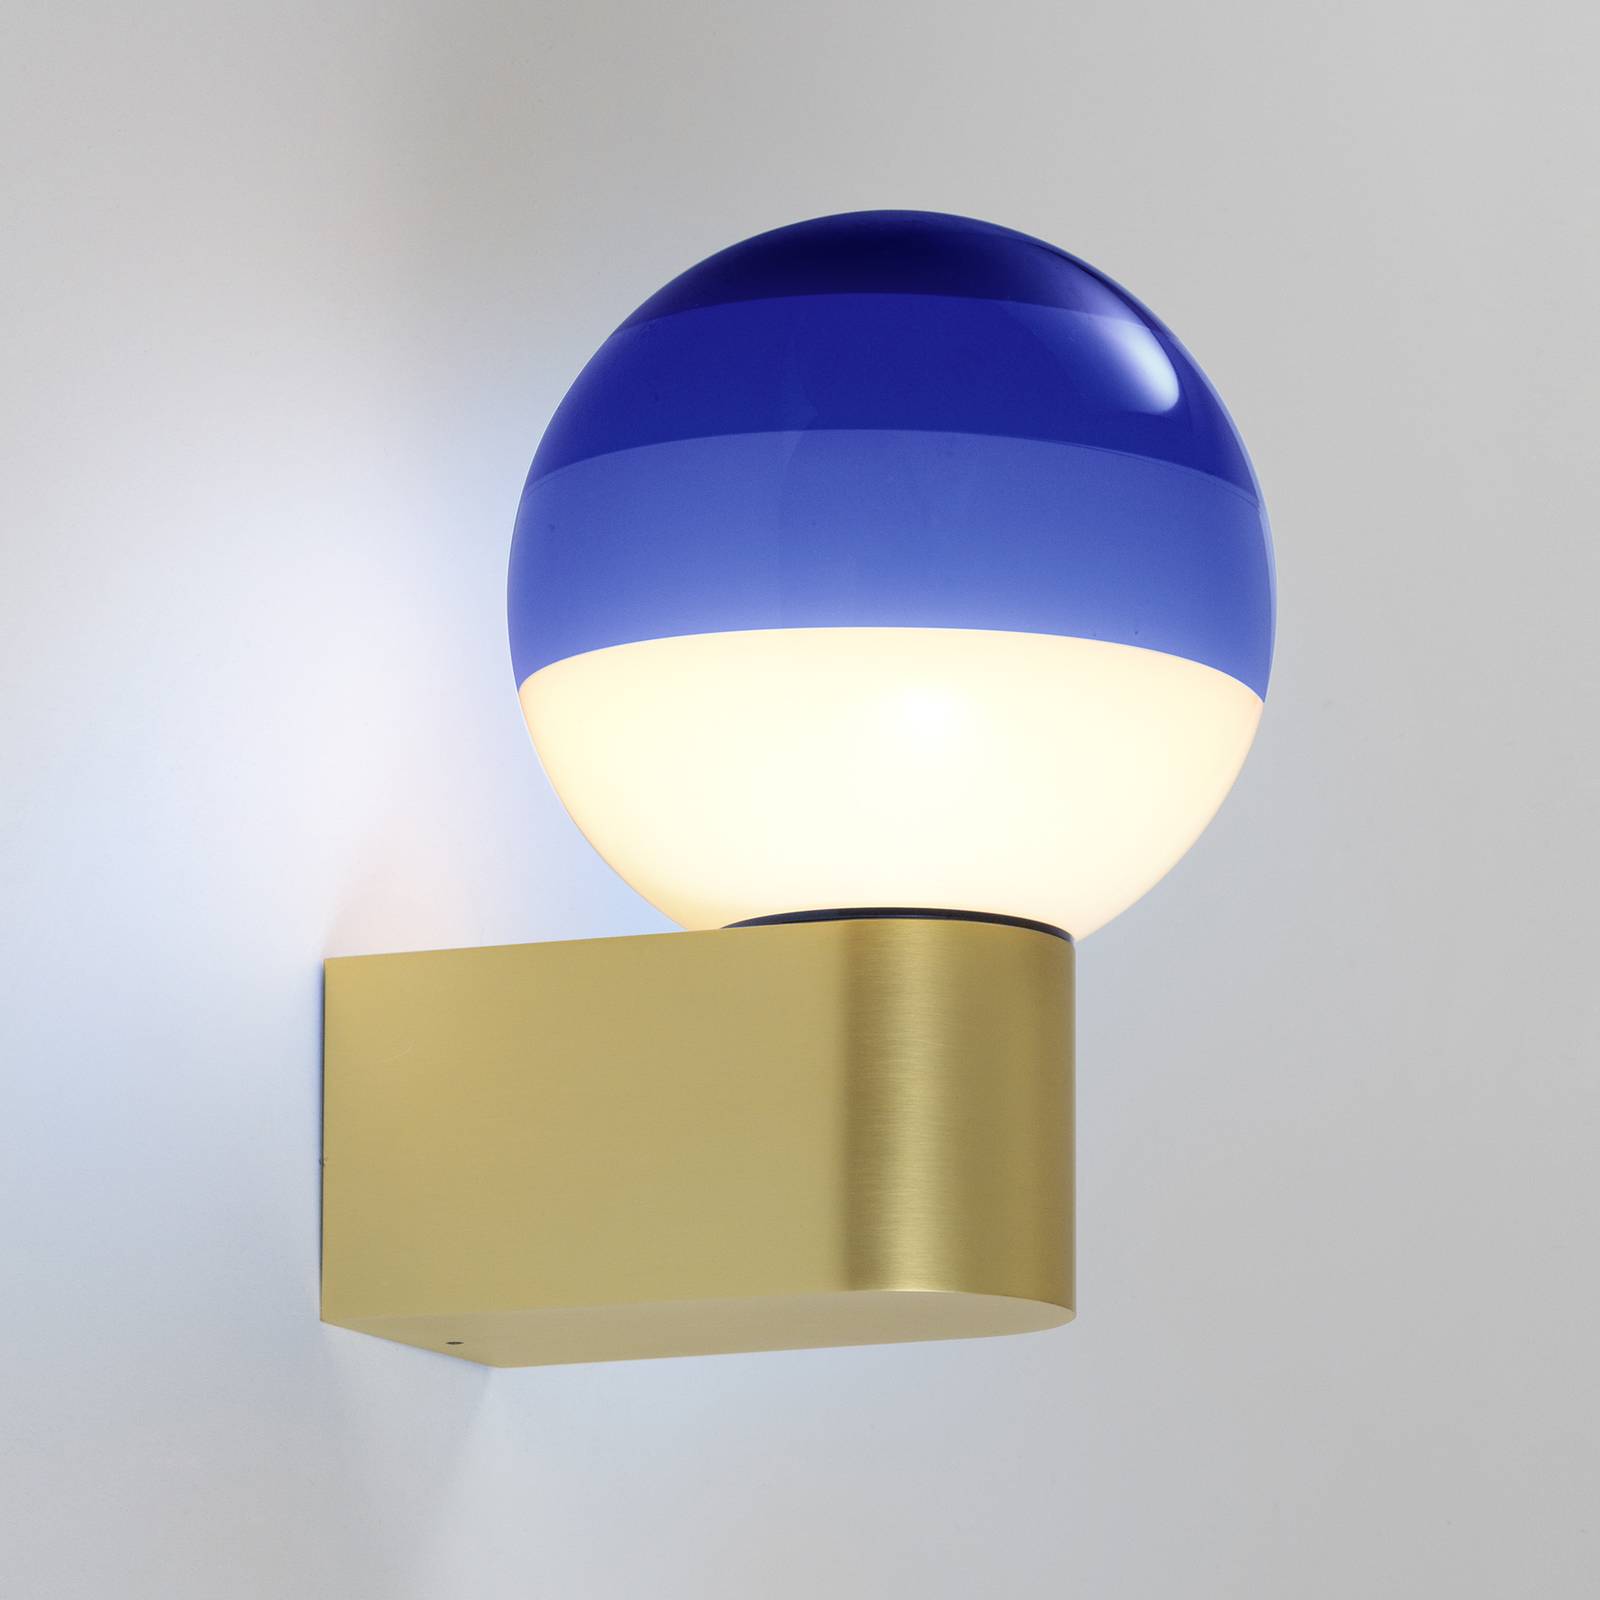 Marset dipping light a1 led fali lámpa, kék/arany